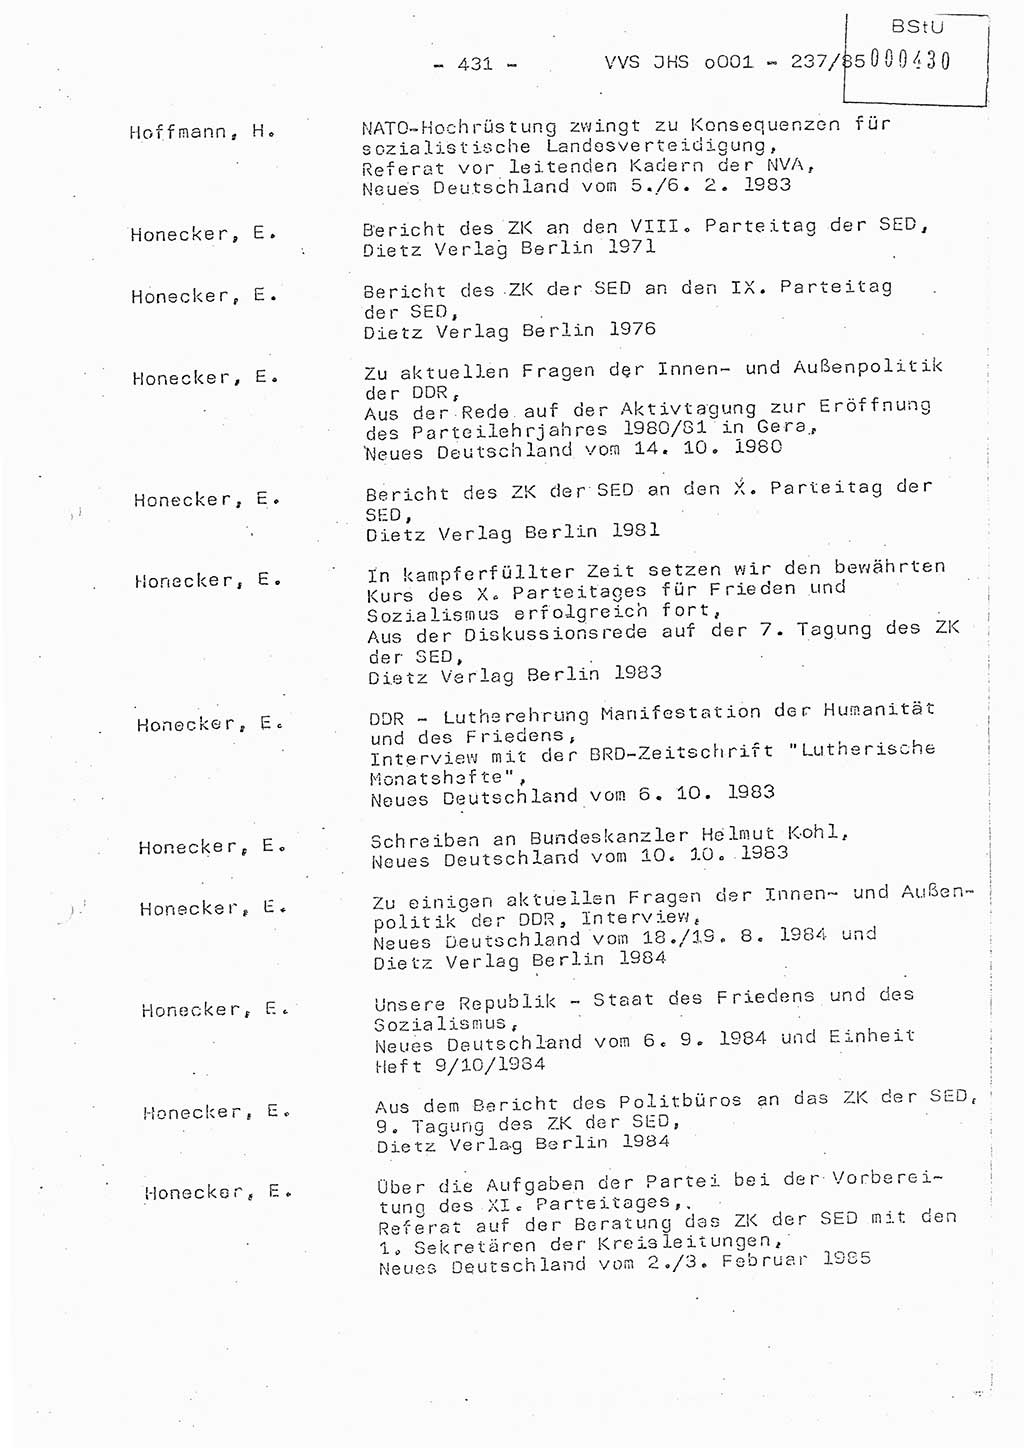 Dissertation Oberstleutnant Peter Jakulski (JHS), Oberstleutnat Christian Rudolph (HA Ⅸ), Major Horst Böttger (ZMD), Major Wolfgang Grüneberg (JHS), Major Albert Meutsch (JHS), Ministerium für Staatssicherheit (MfS) [Deutsche Demokratische Republik (DDR)], Juristische Hochschule (JHS), Vertrauliche Verschlußsache (VVS) o001-237/85, Potsdam 1985, Seite 431 (Diss. MfS DDR JHS VVS o001-237/85 1985, S. 431)